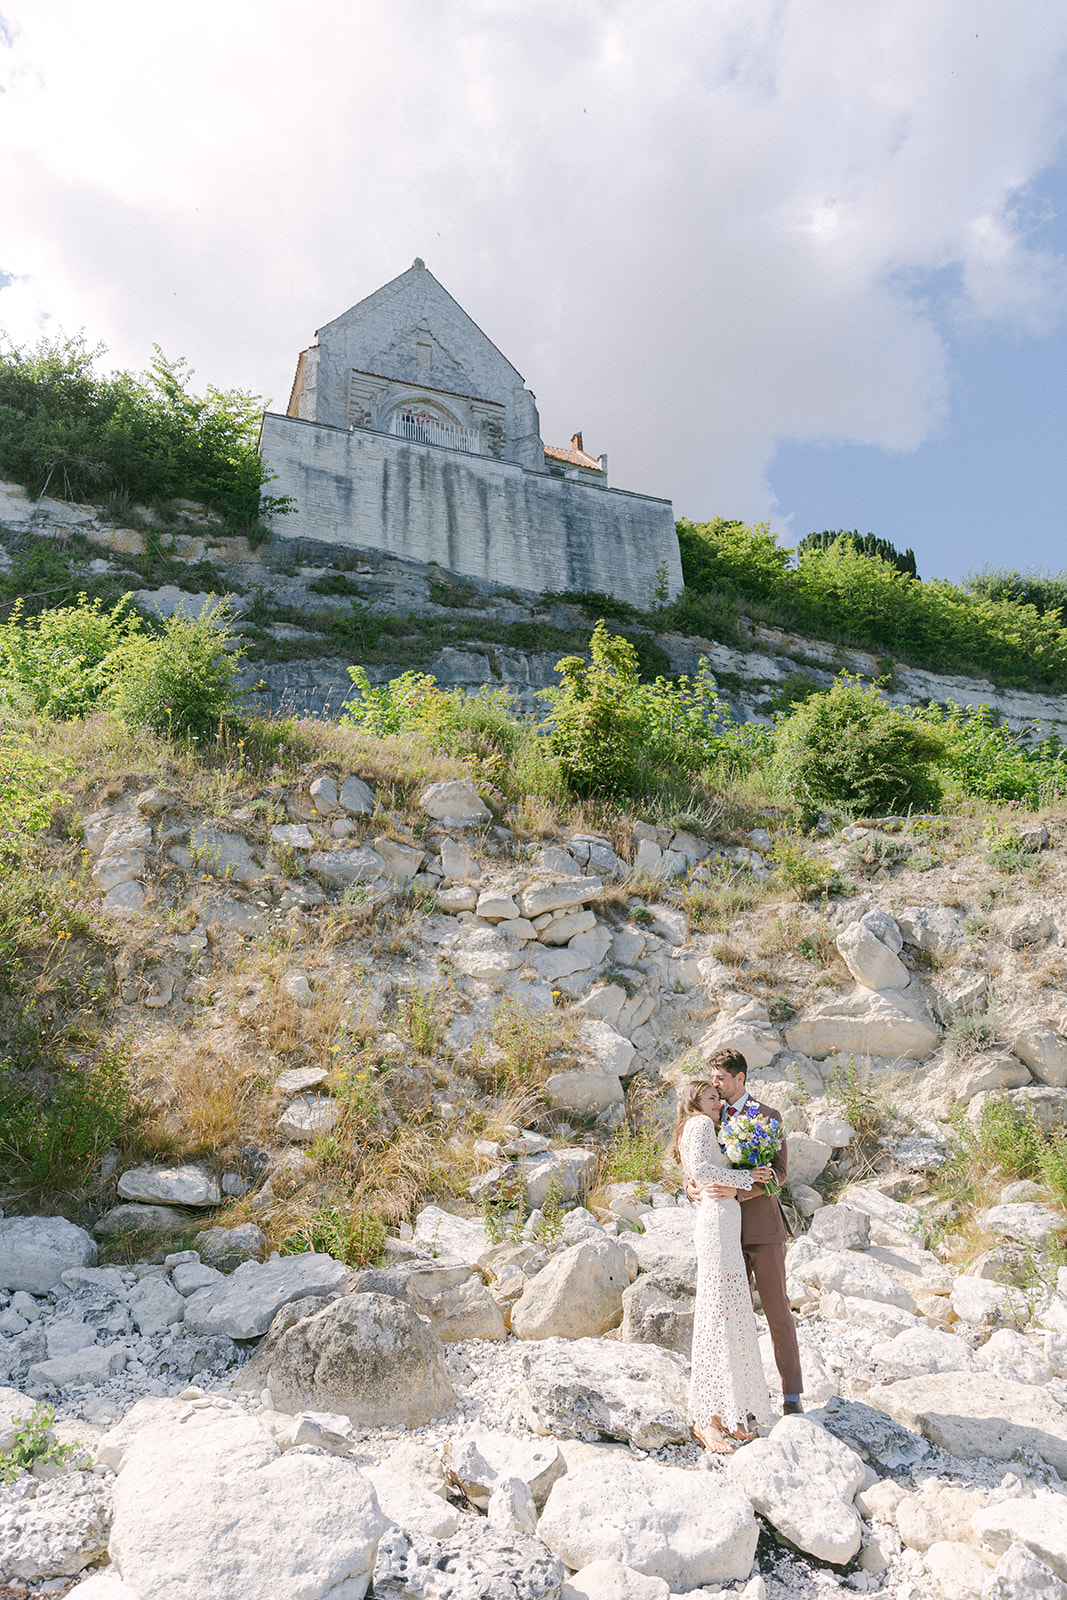 Unforgettable Summer Wedding - Love Finds Its Way in Stevns Klint